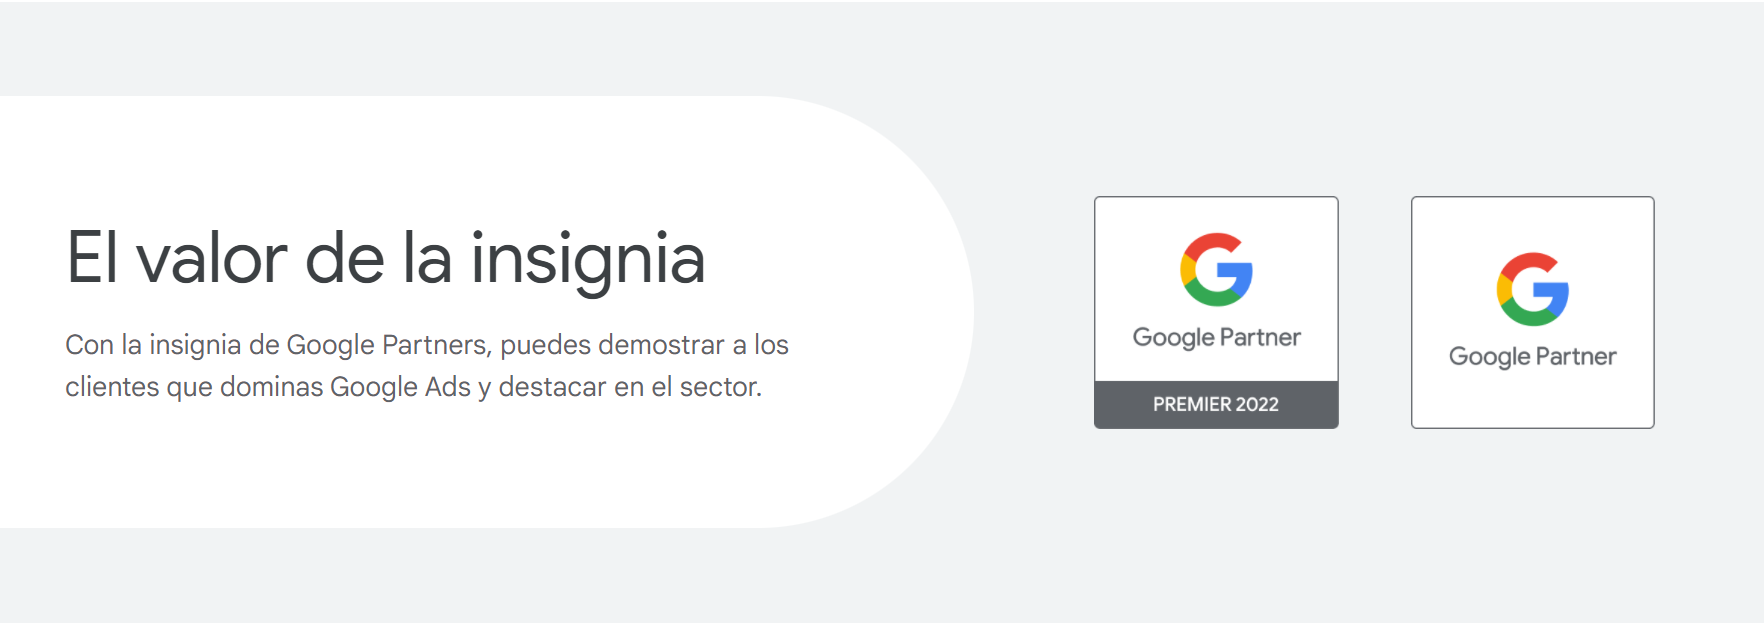 insignia google partner premier nineclicks agencia de seo y sem